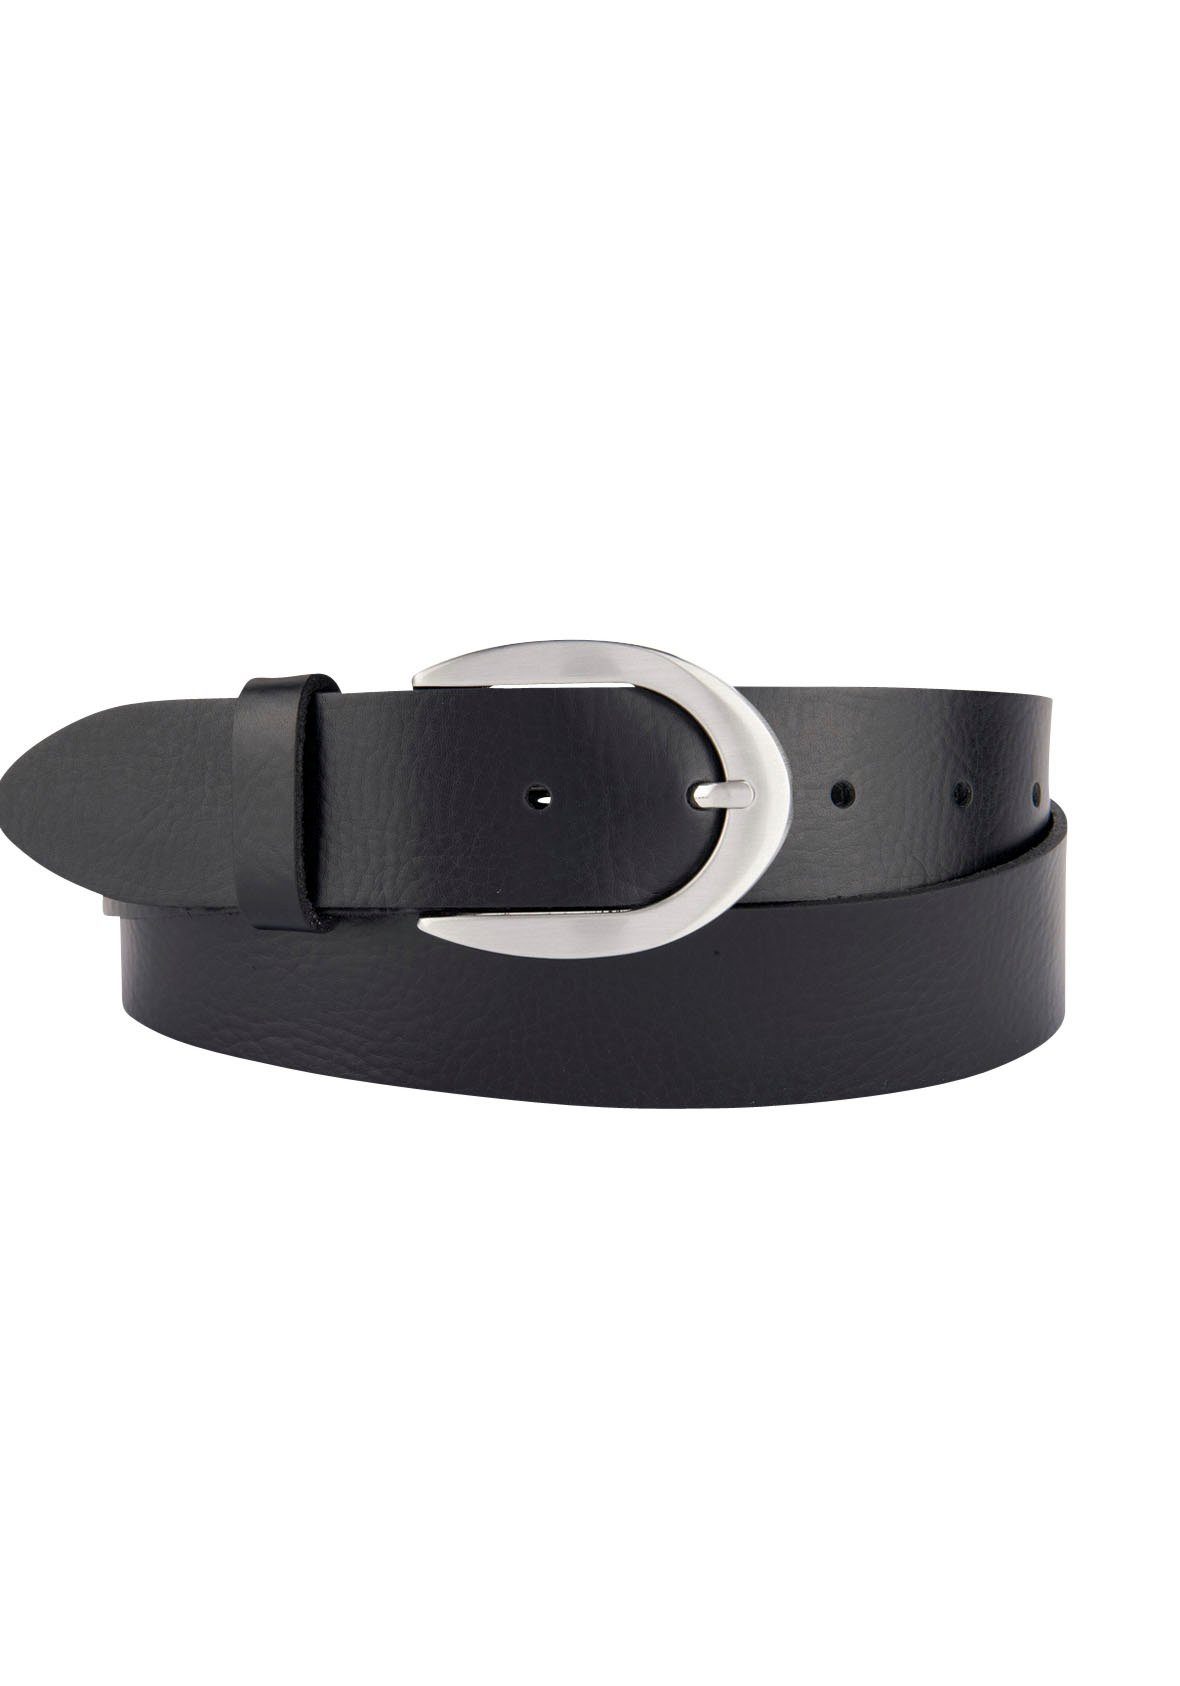 BERND GÖTZ Ledergürtel mit glänzender Schließe in Hufeisenform schwarz | Anzuggürtel